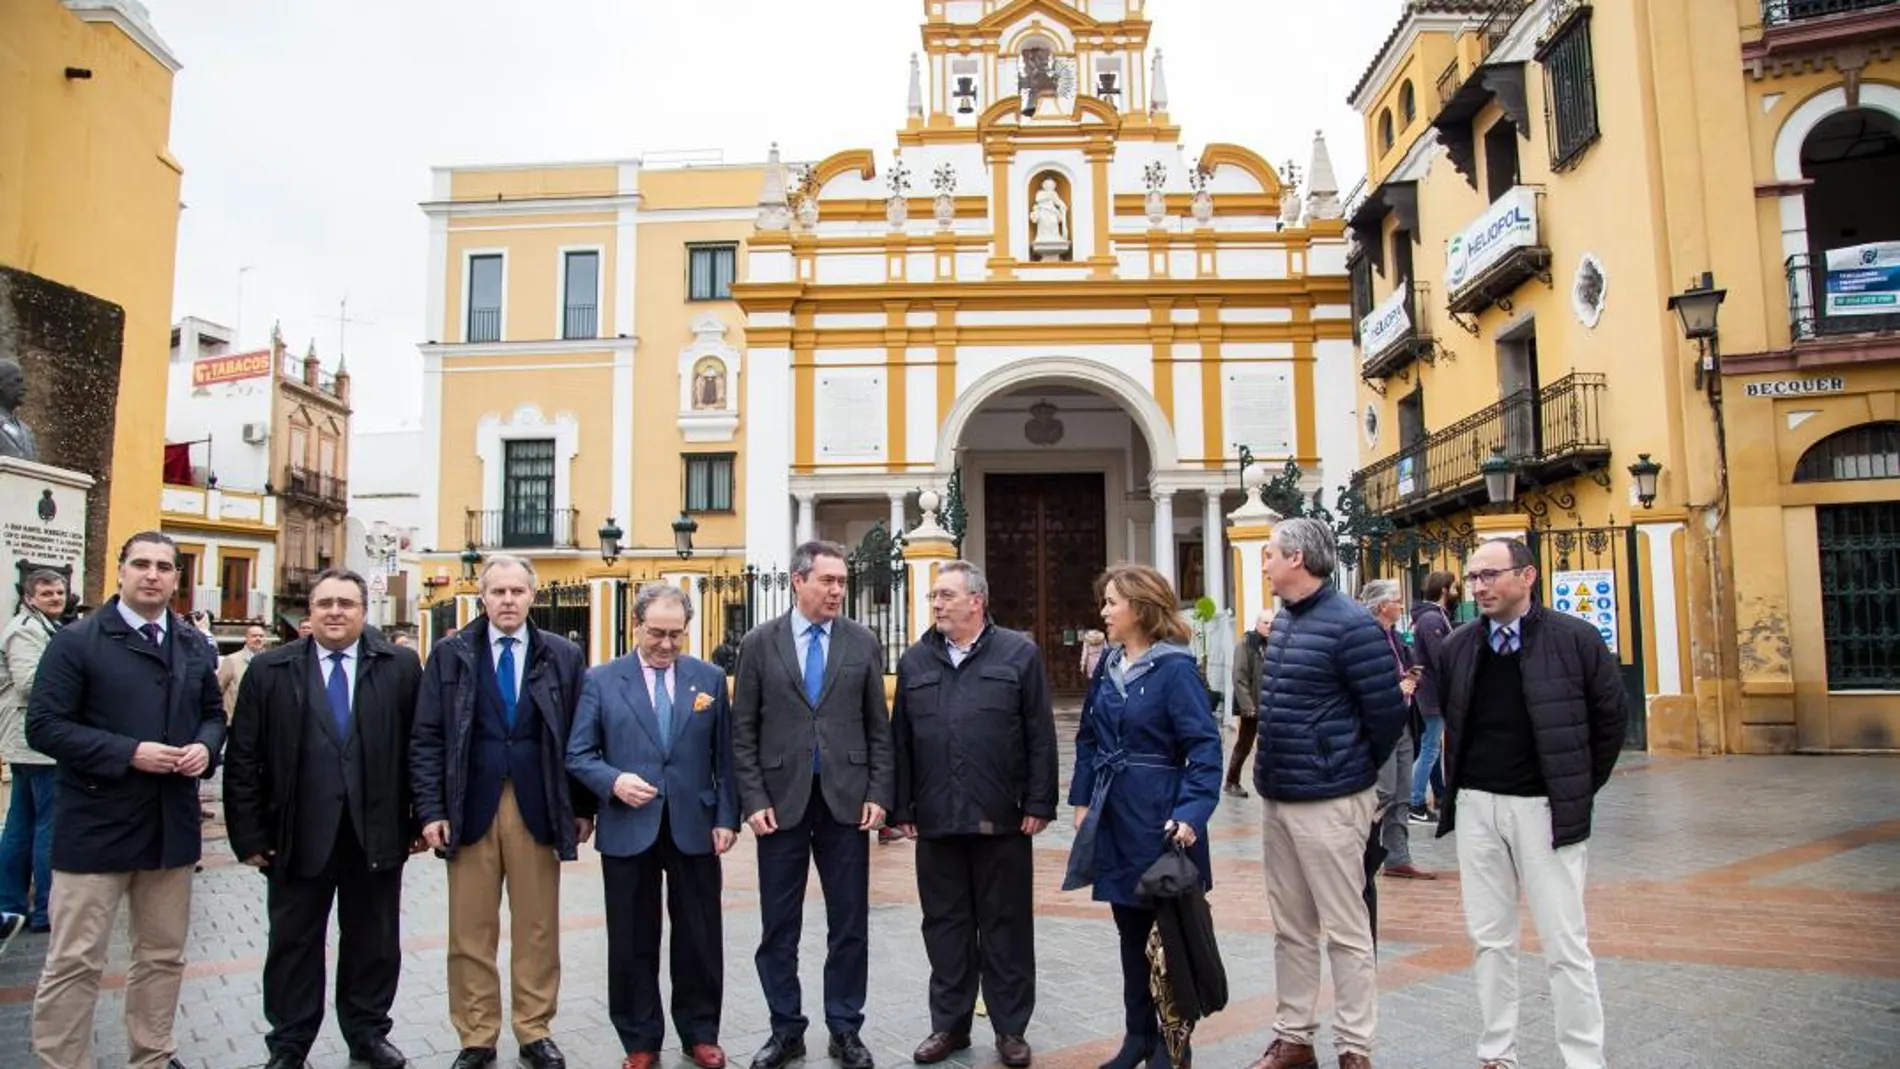 Finaliza la reurbanización del entorno de la basílica de la Macarena, con una plaza peatonal y accesible